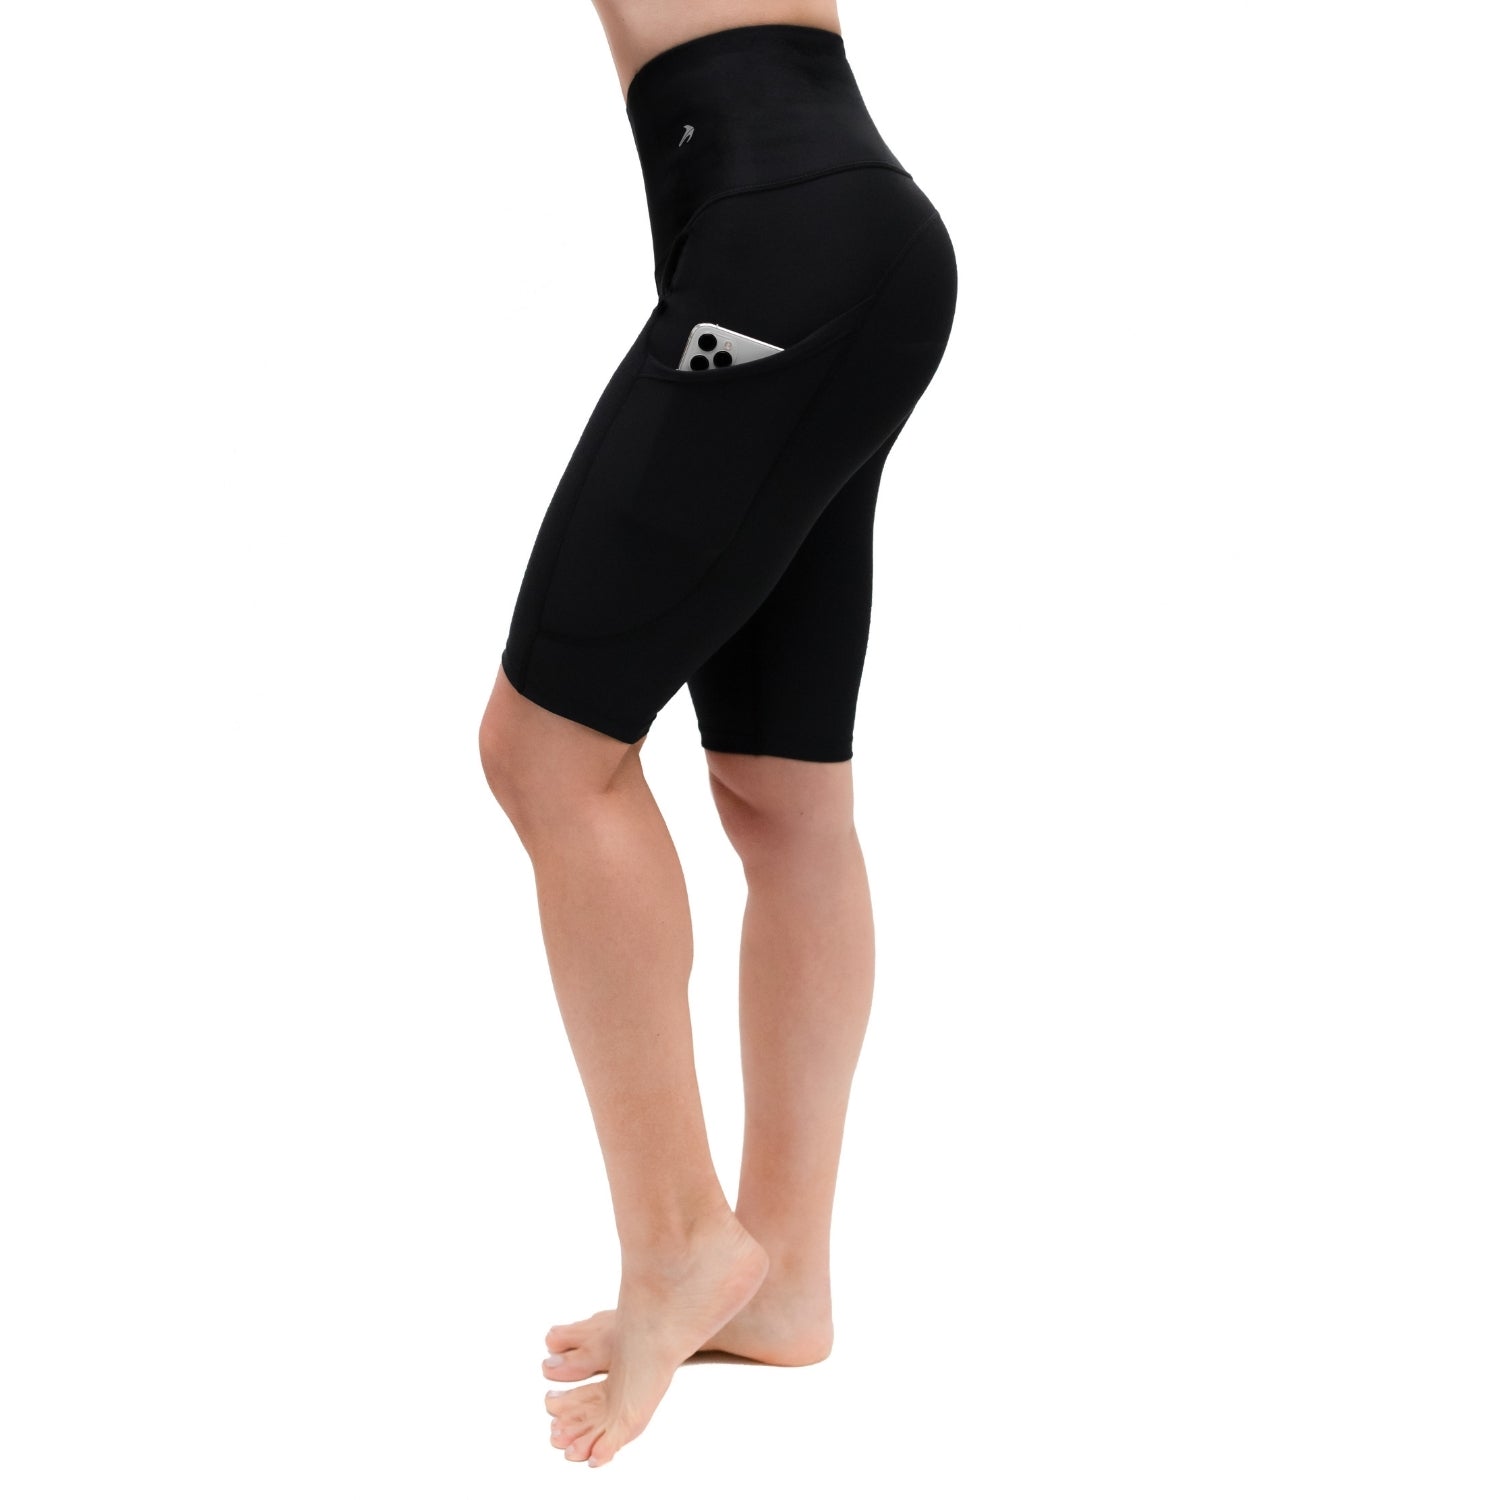 Women's Biker Shorts W/ Pockets - 10" Black